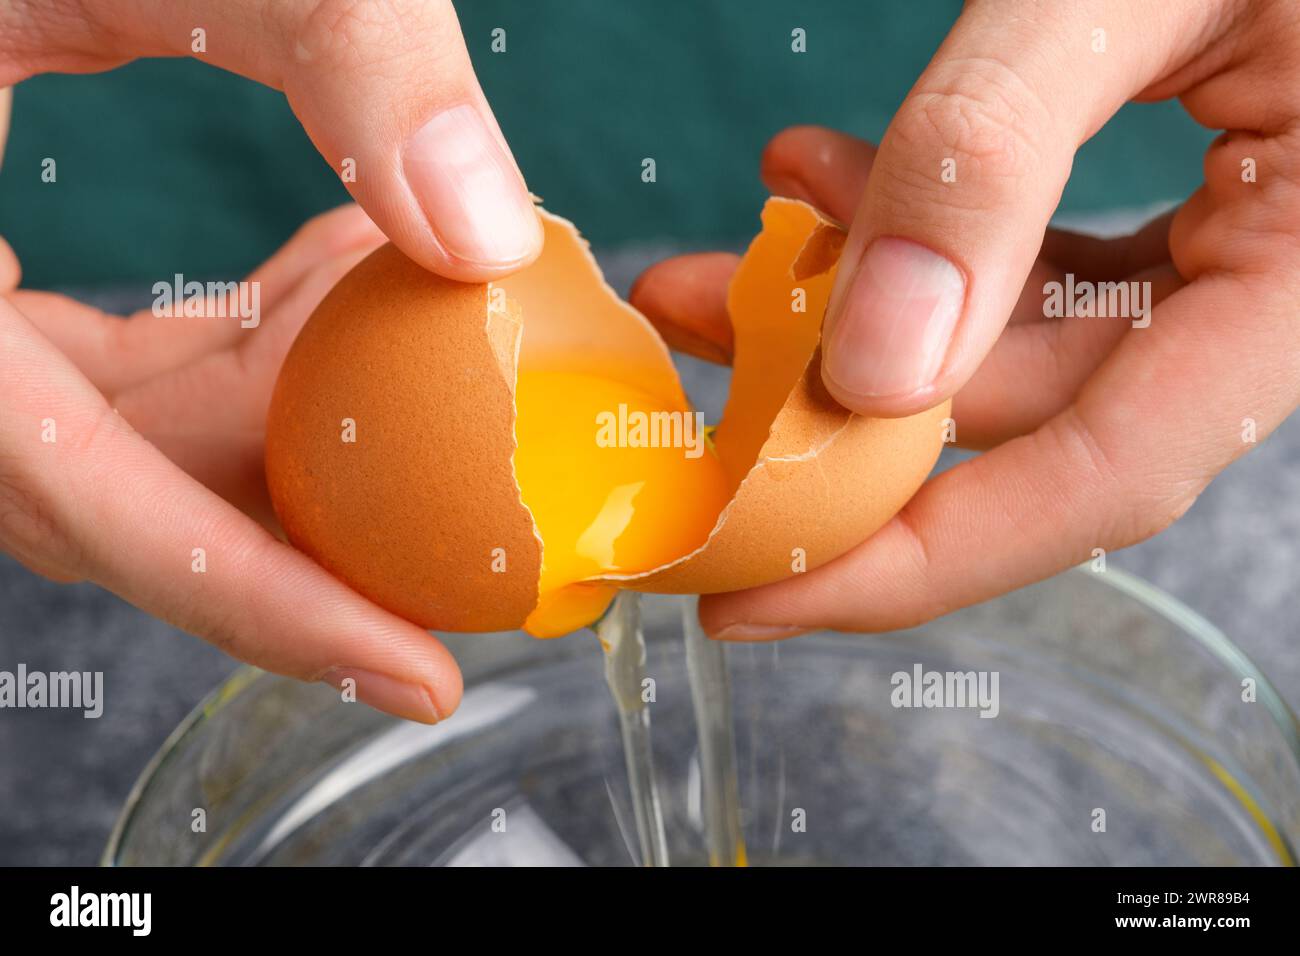 Les mains de femme au foyer craquant l'œuf frais, le jaune et le blanc tombant dans un bol. La main d'une femme cassant un oeuf avec un couteau dans un bol en verre transparent dans le k gris Banque D'Images